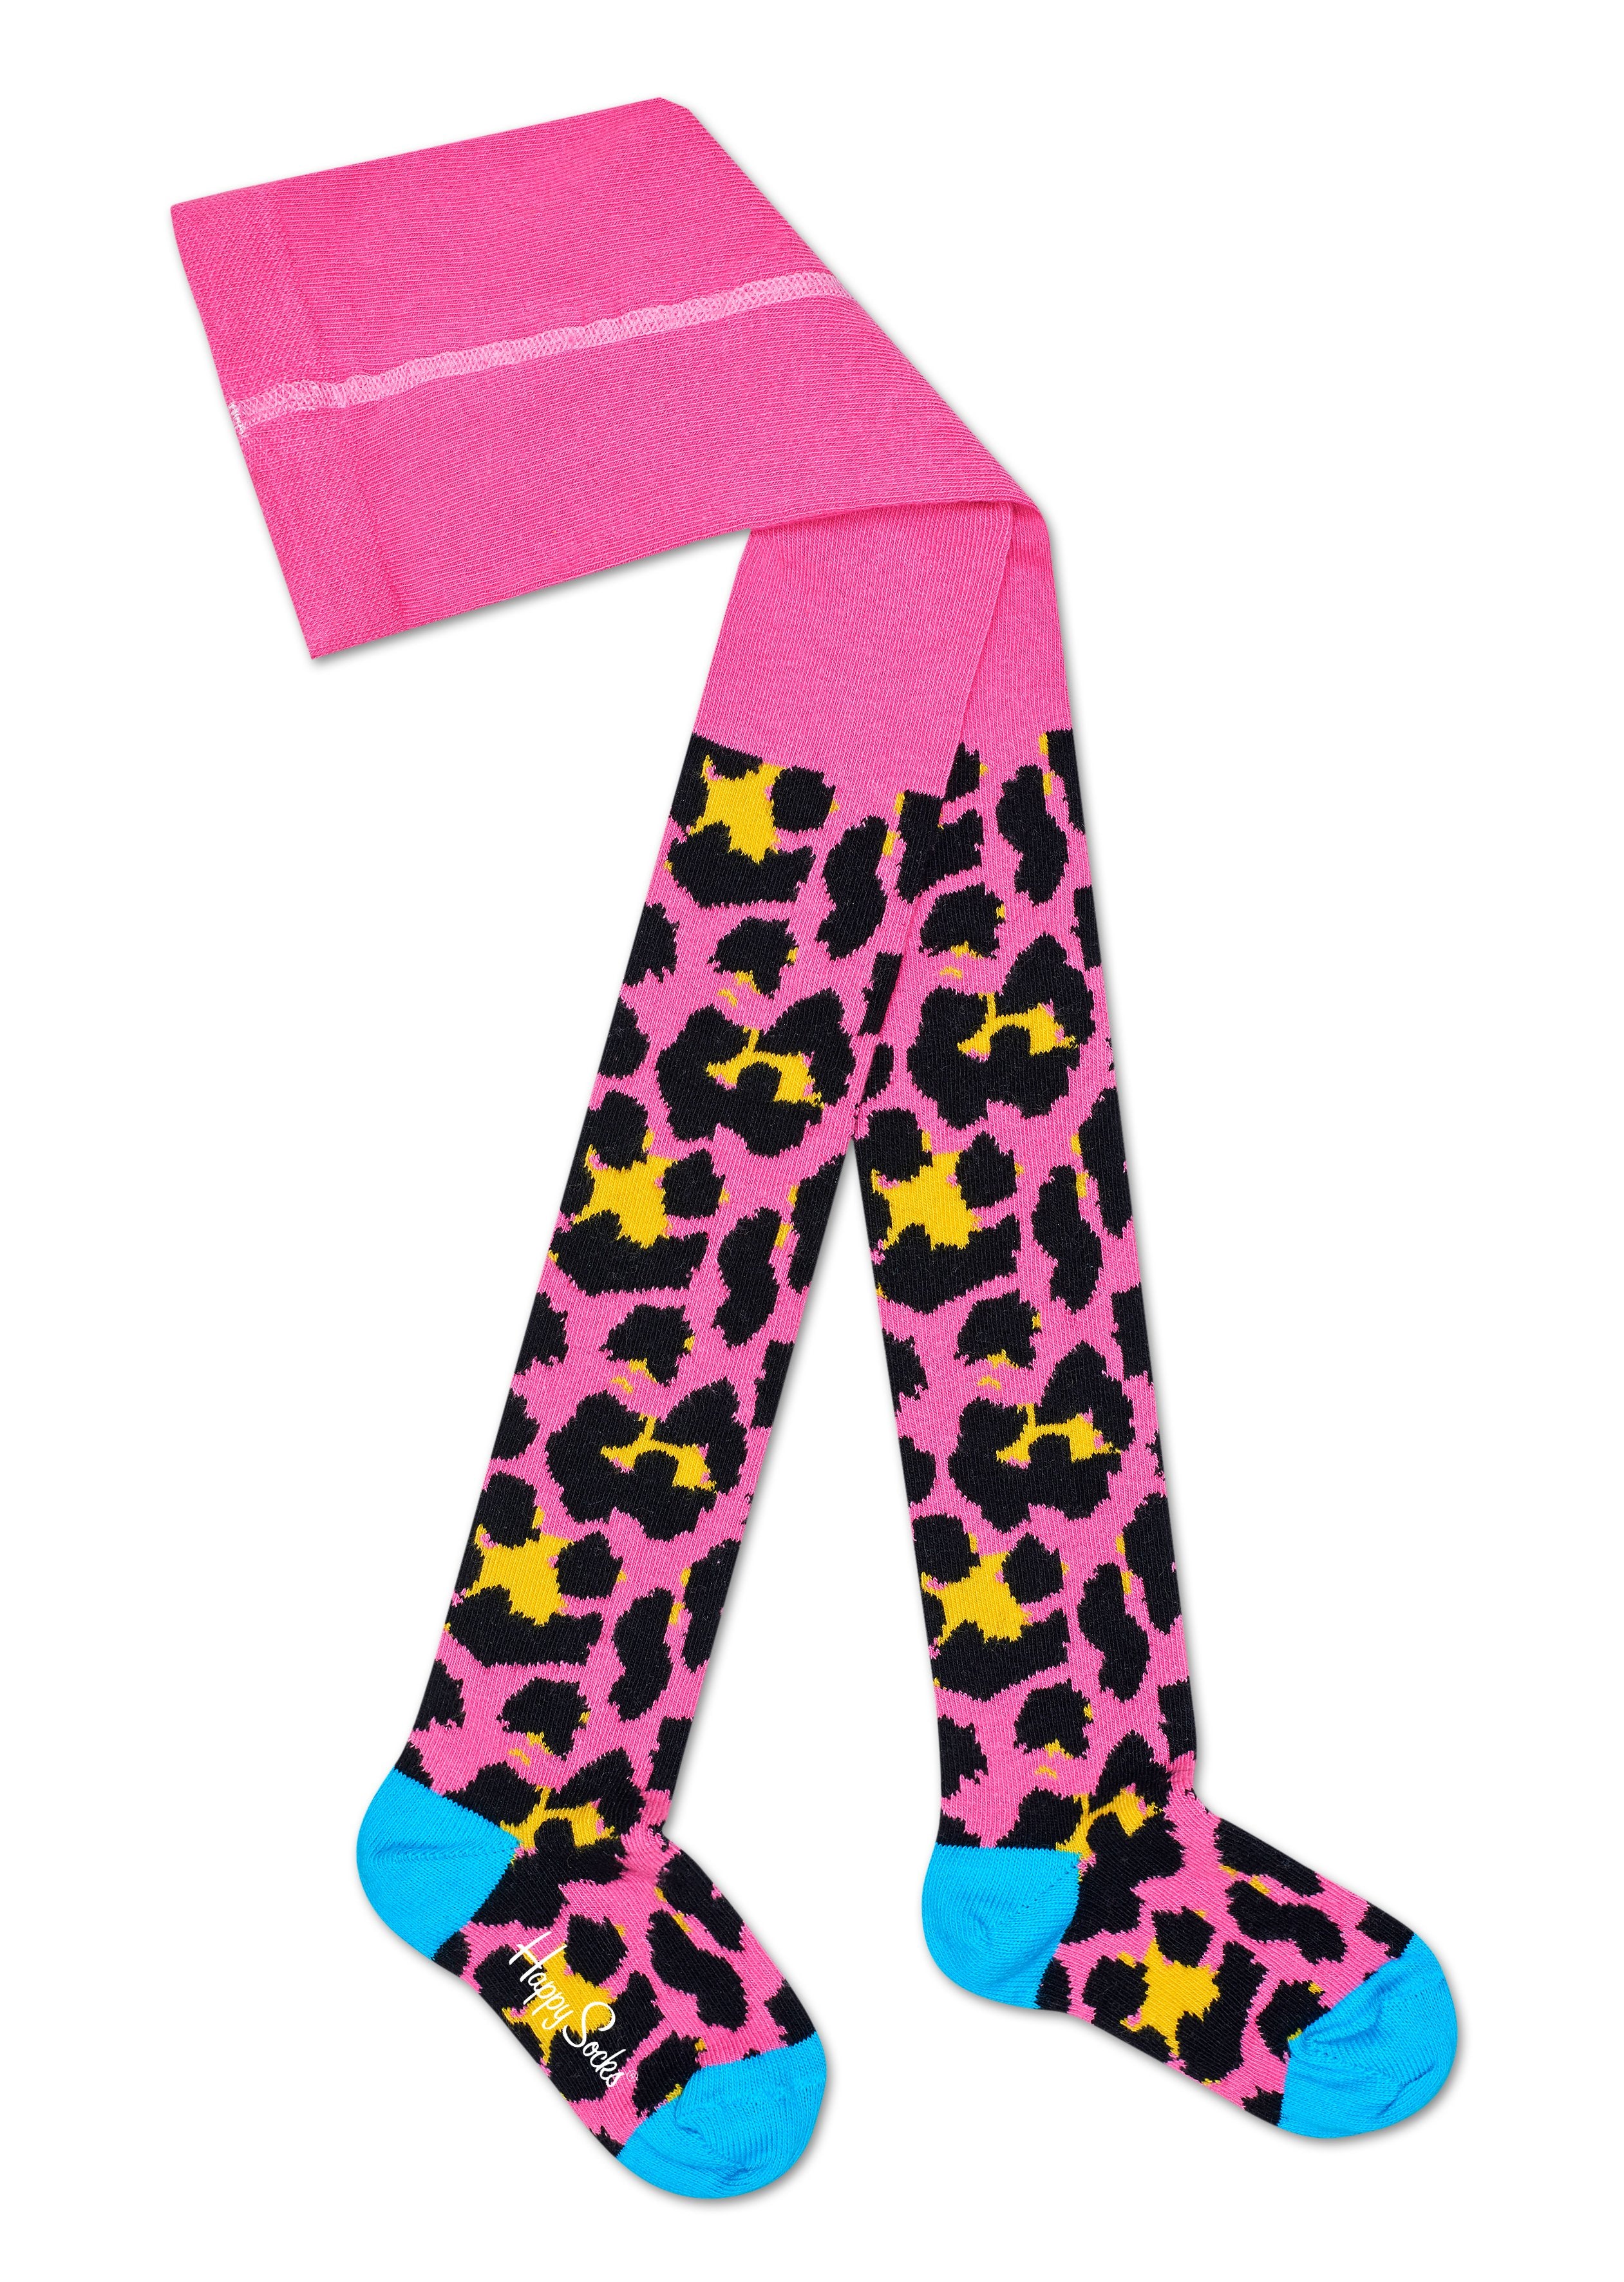 Dětské růžové punčochy Happy Socks s barevným vzorem Leopard